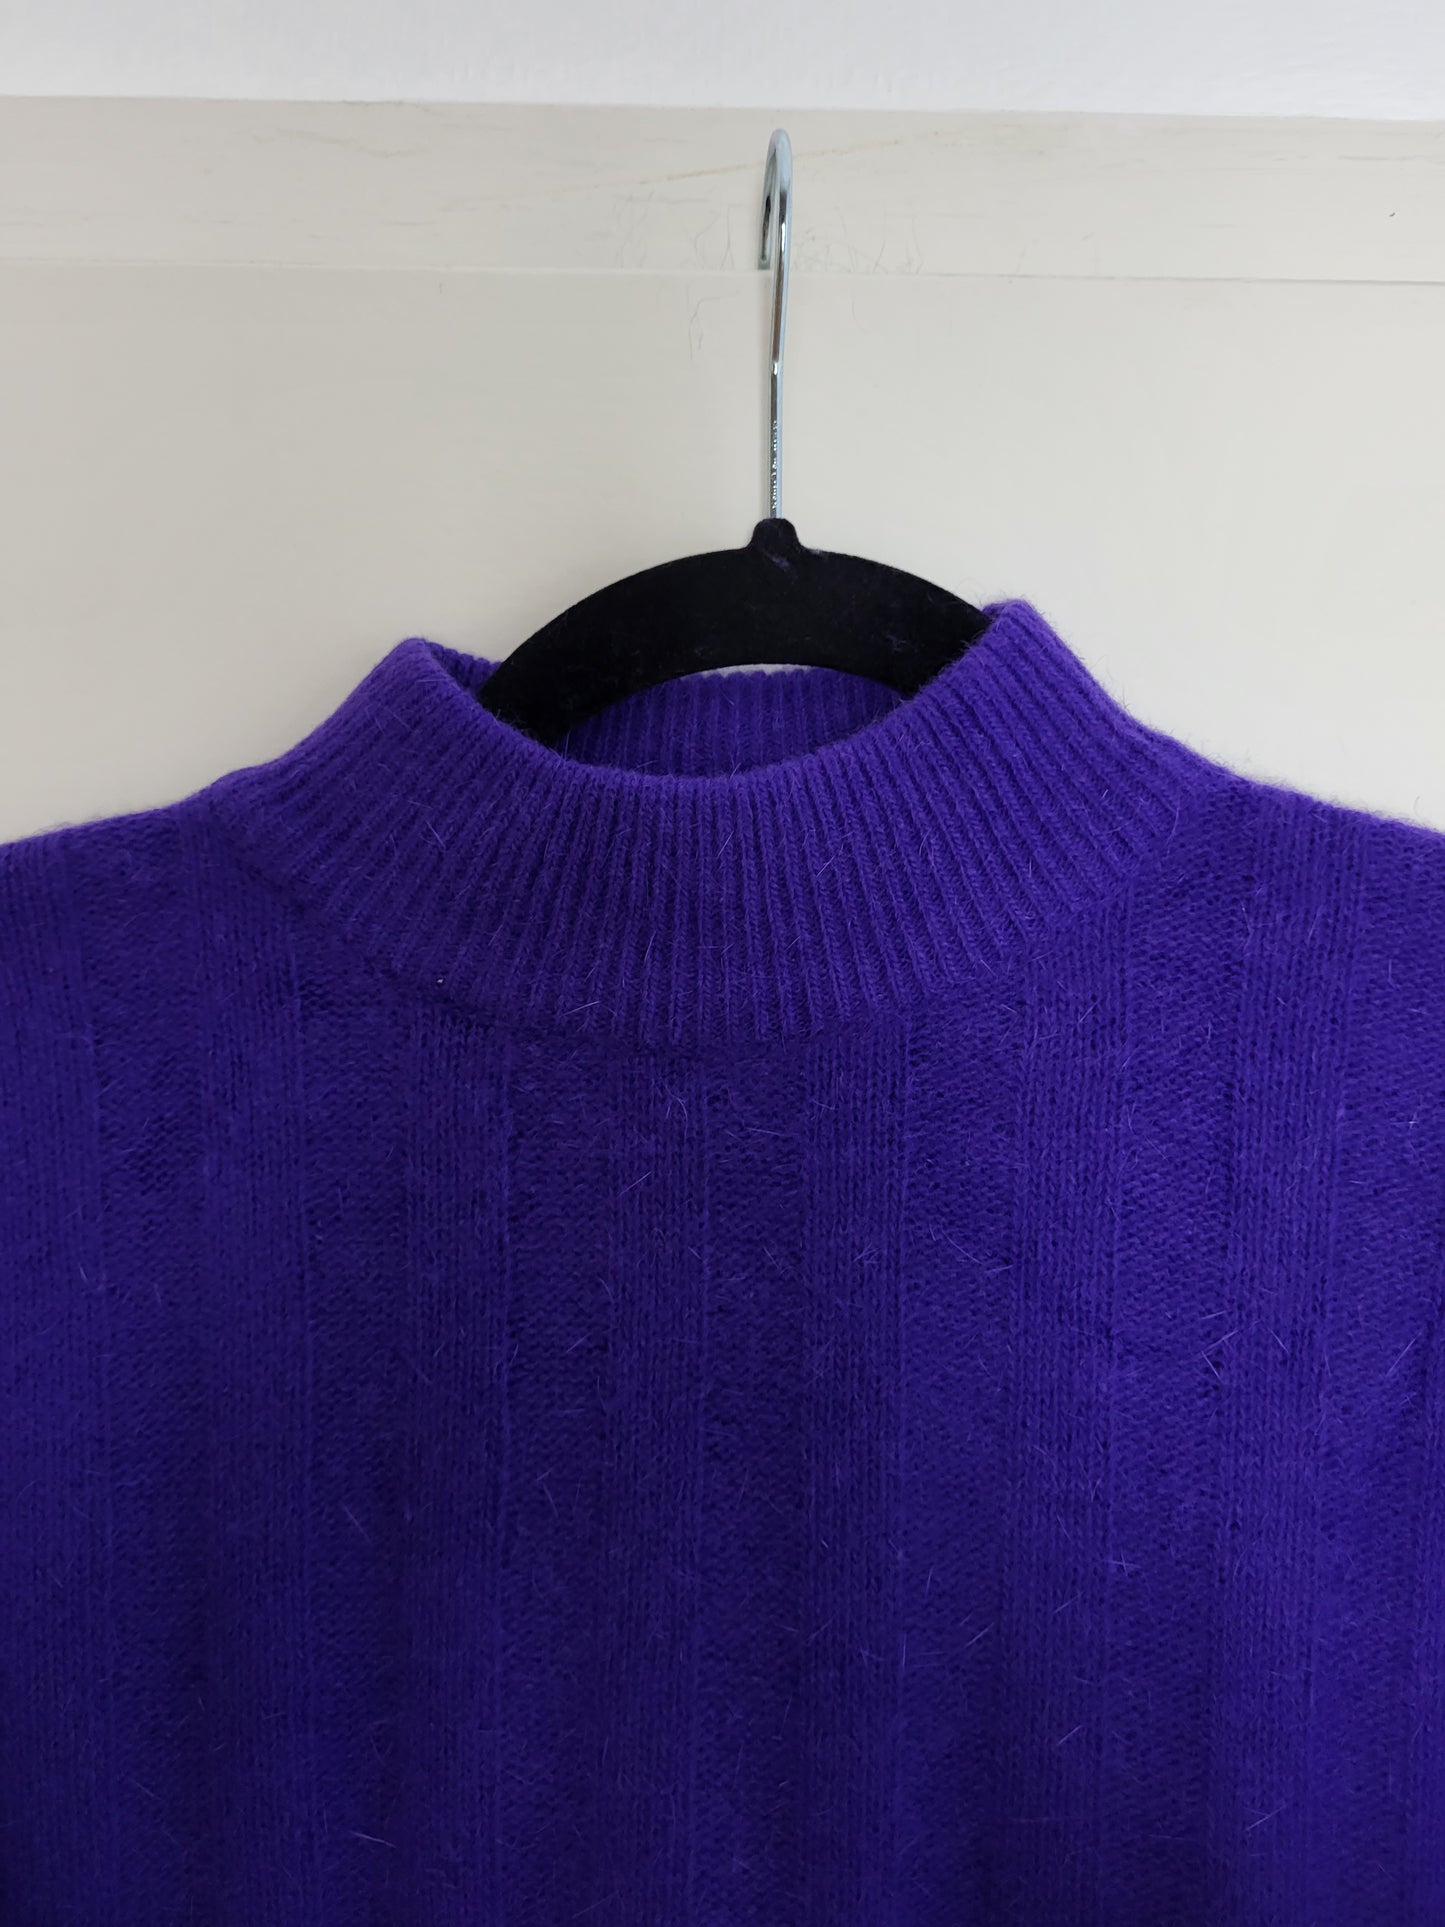 Vintage MISCHABEL - Pullover - Muster - Vintage Wolle - Lila - Damen - M/L